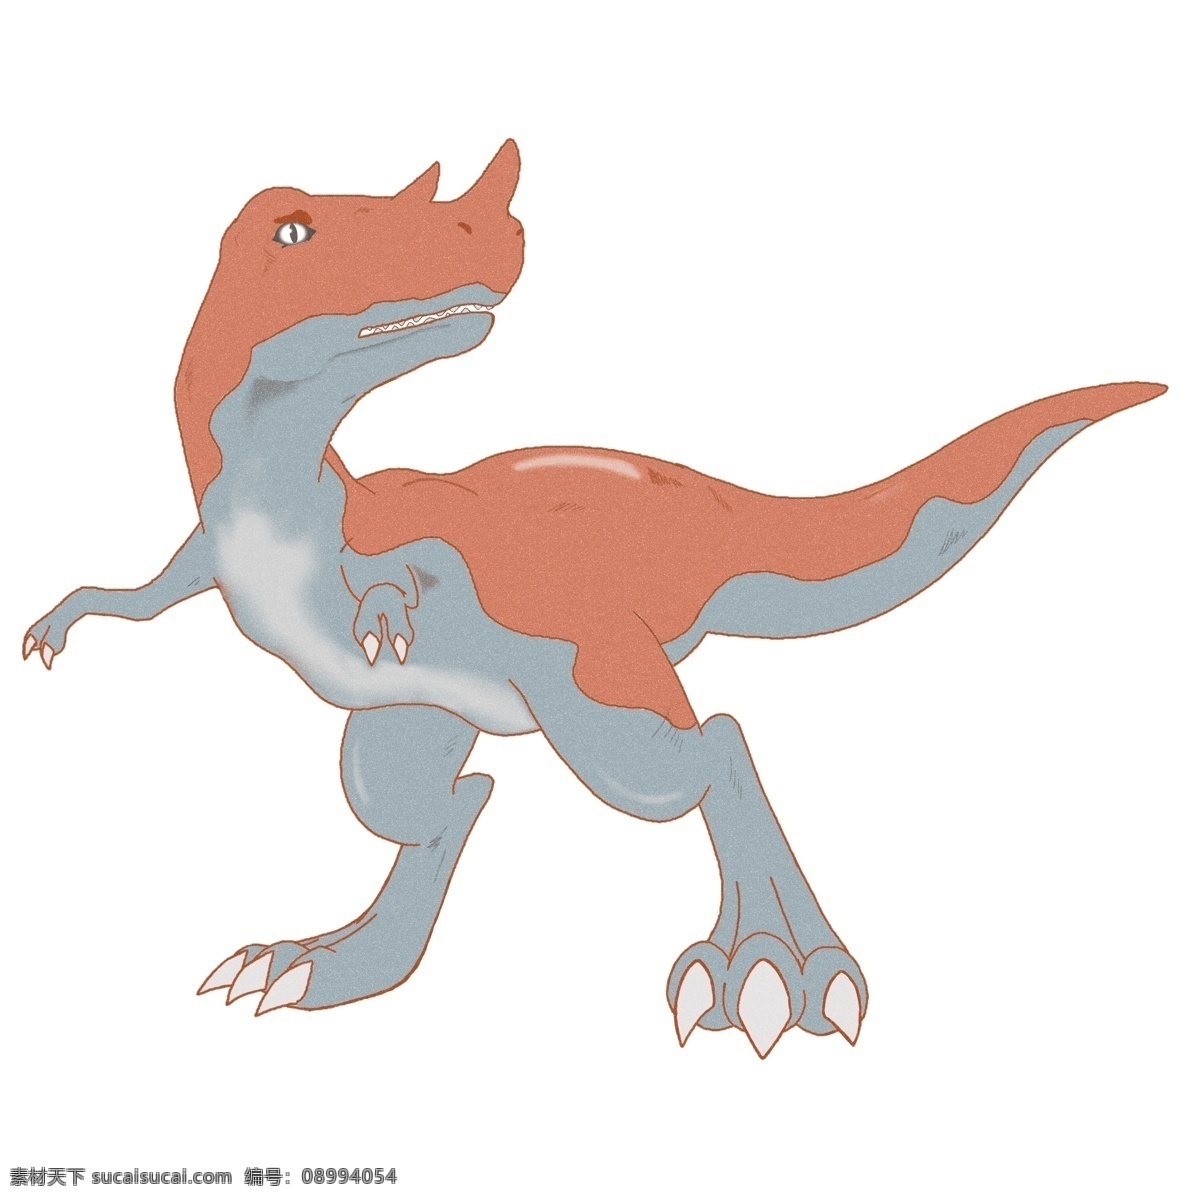 蓝色 恐龙 卡通 插画 蓝色的恐龙 恐龙的插画 卡通插画 动物插画 动物 漂亮的恐龙 可爱的恐龙